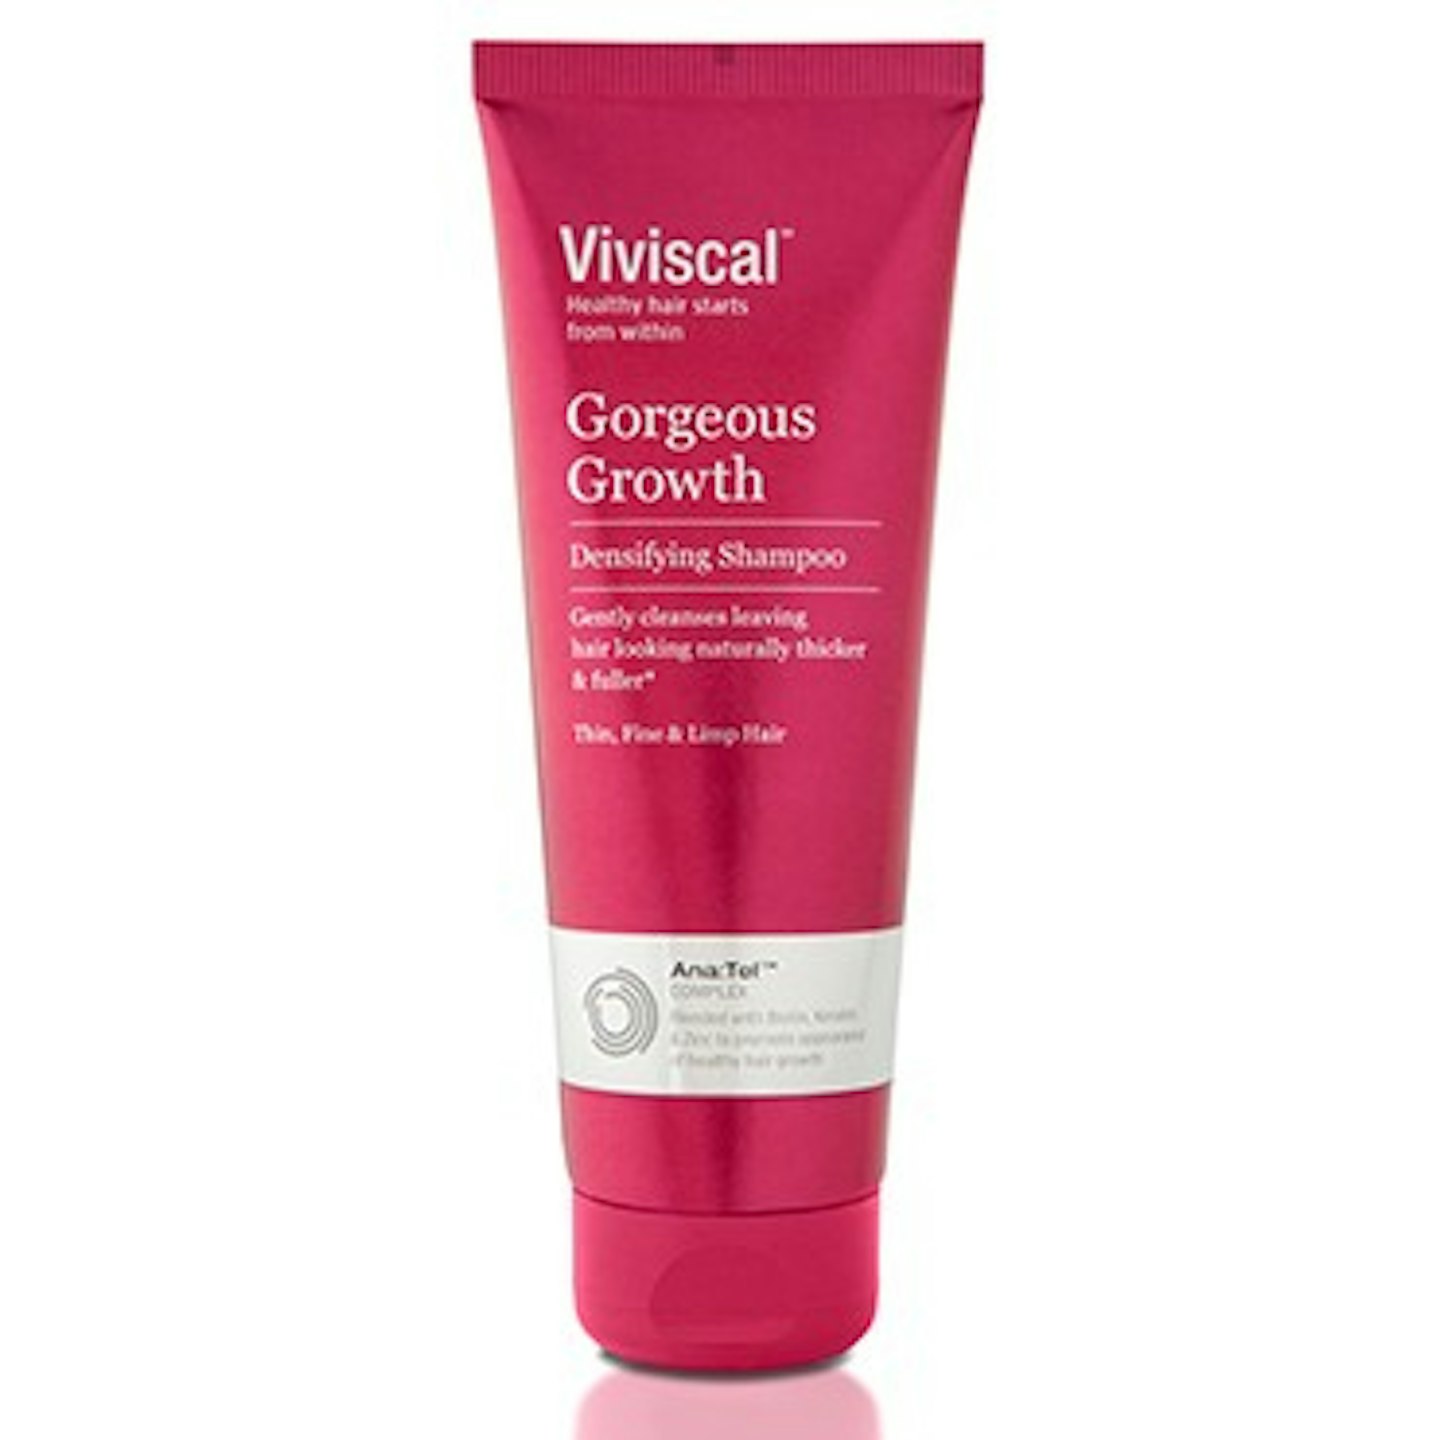 viviscal-shampoo-hair